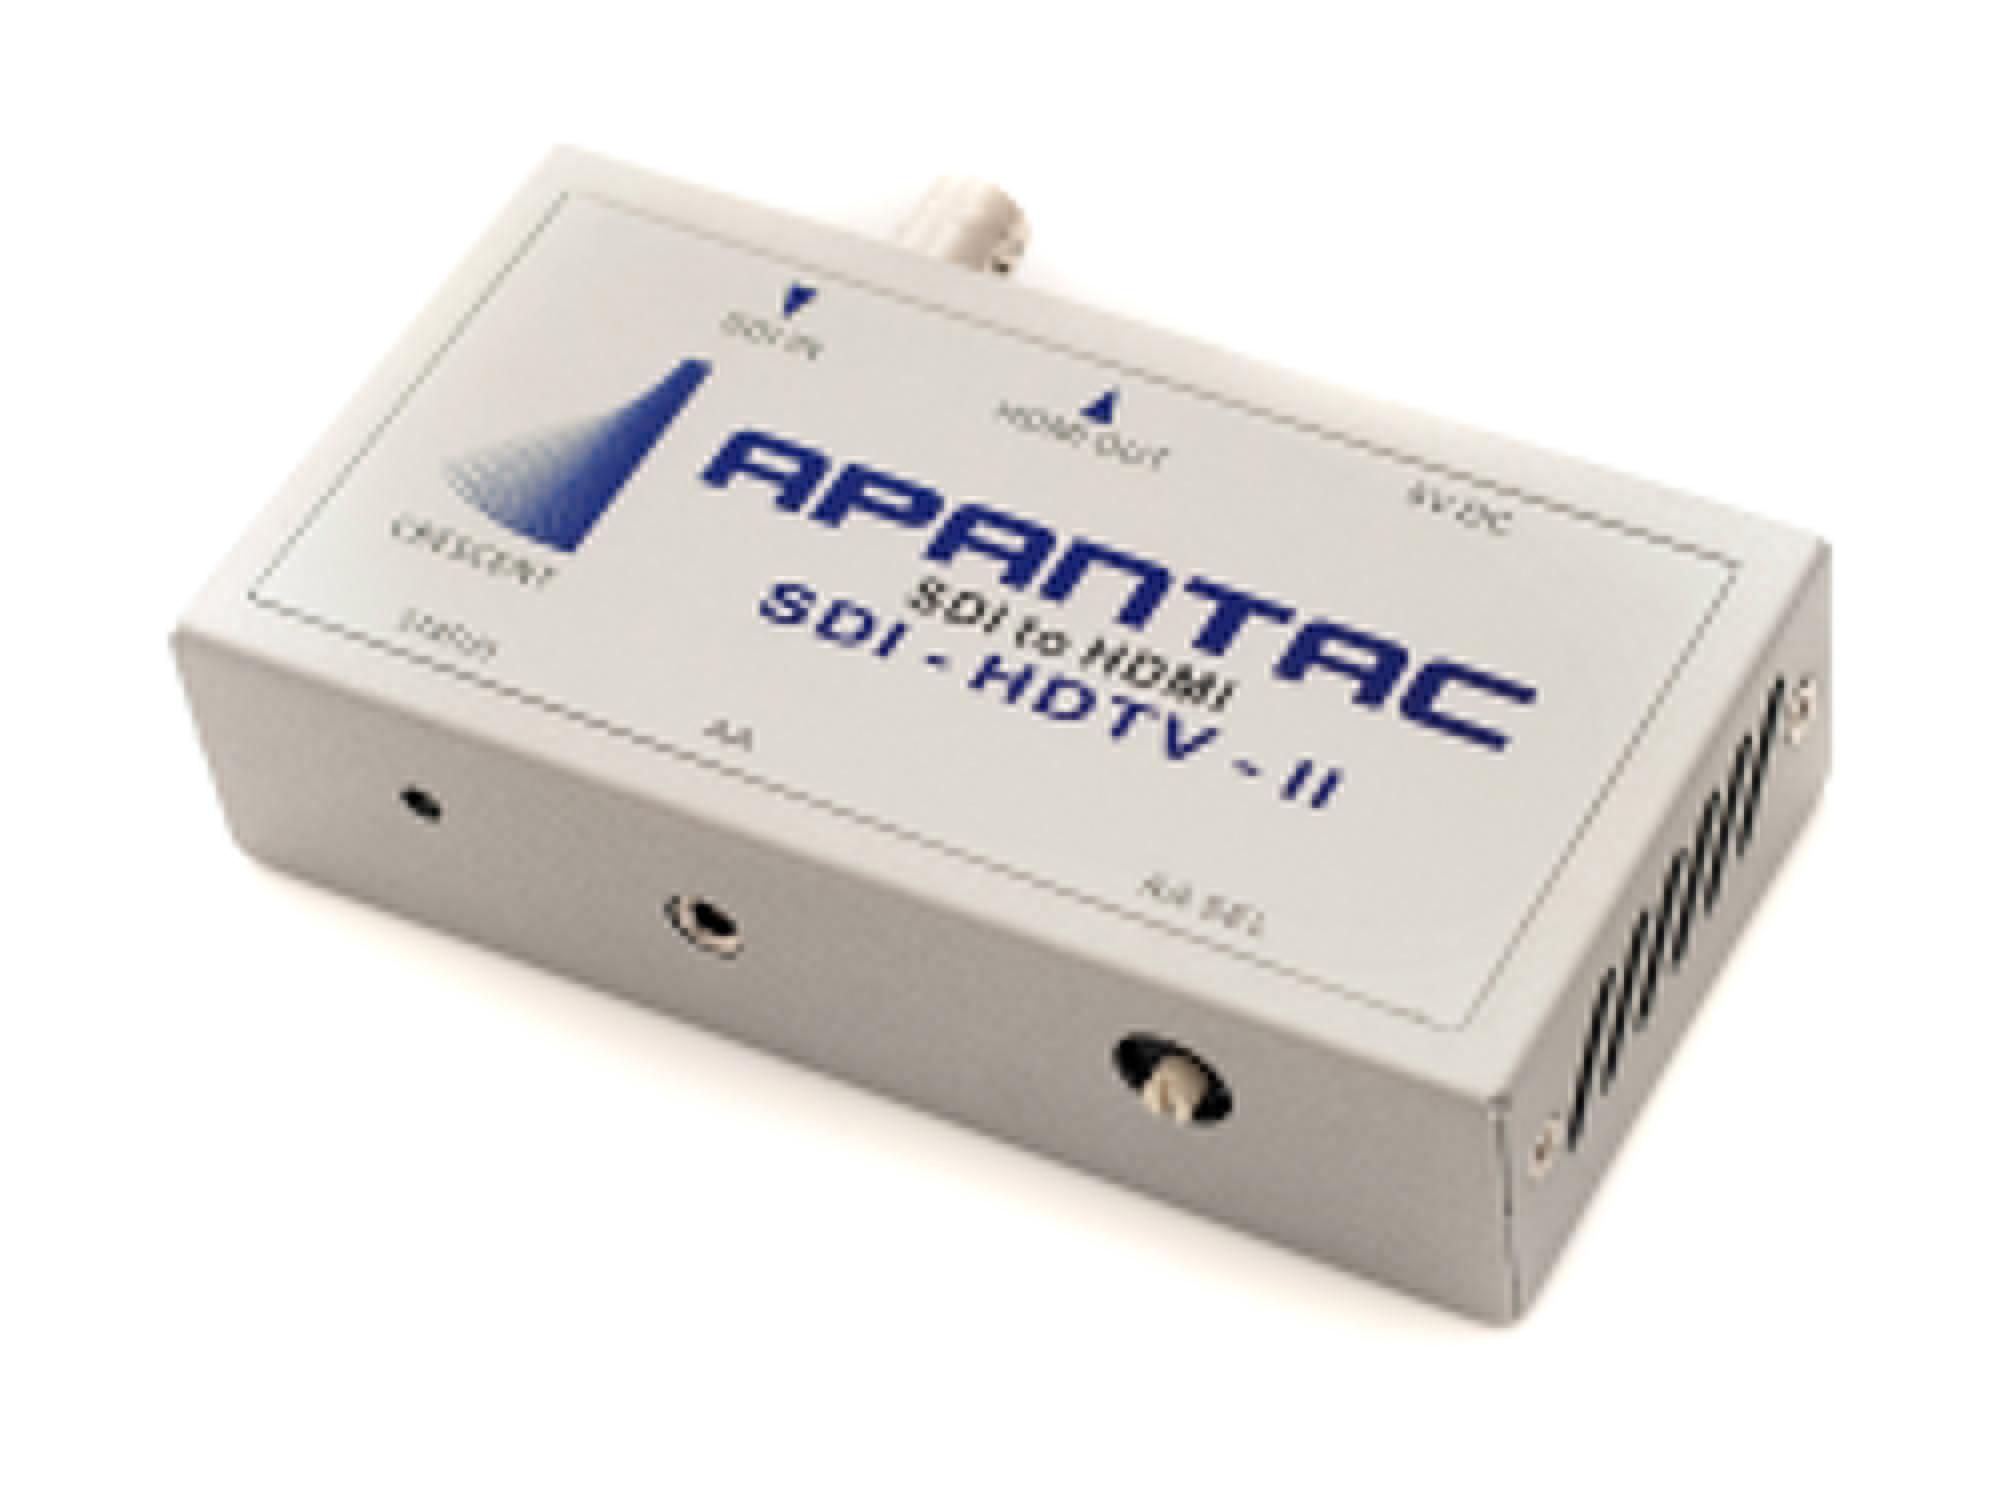 Apantac DA-SDI-HDTV-II SDI to HDMI/DVI Converter